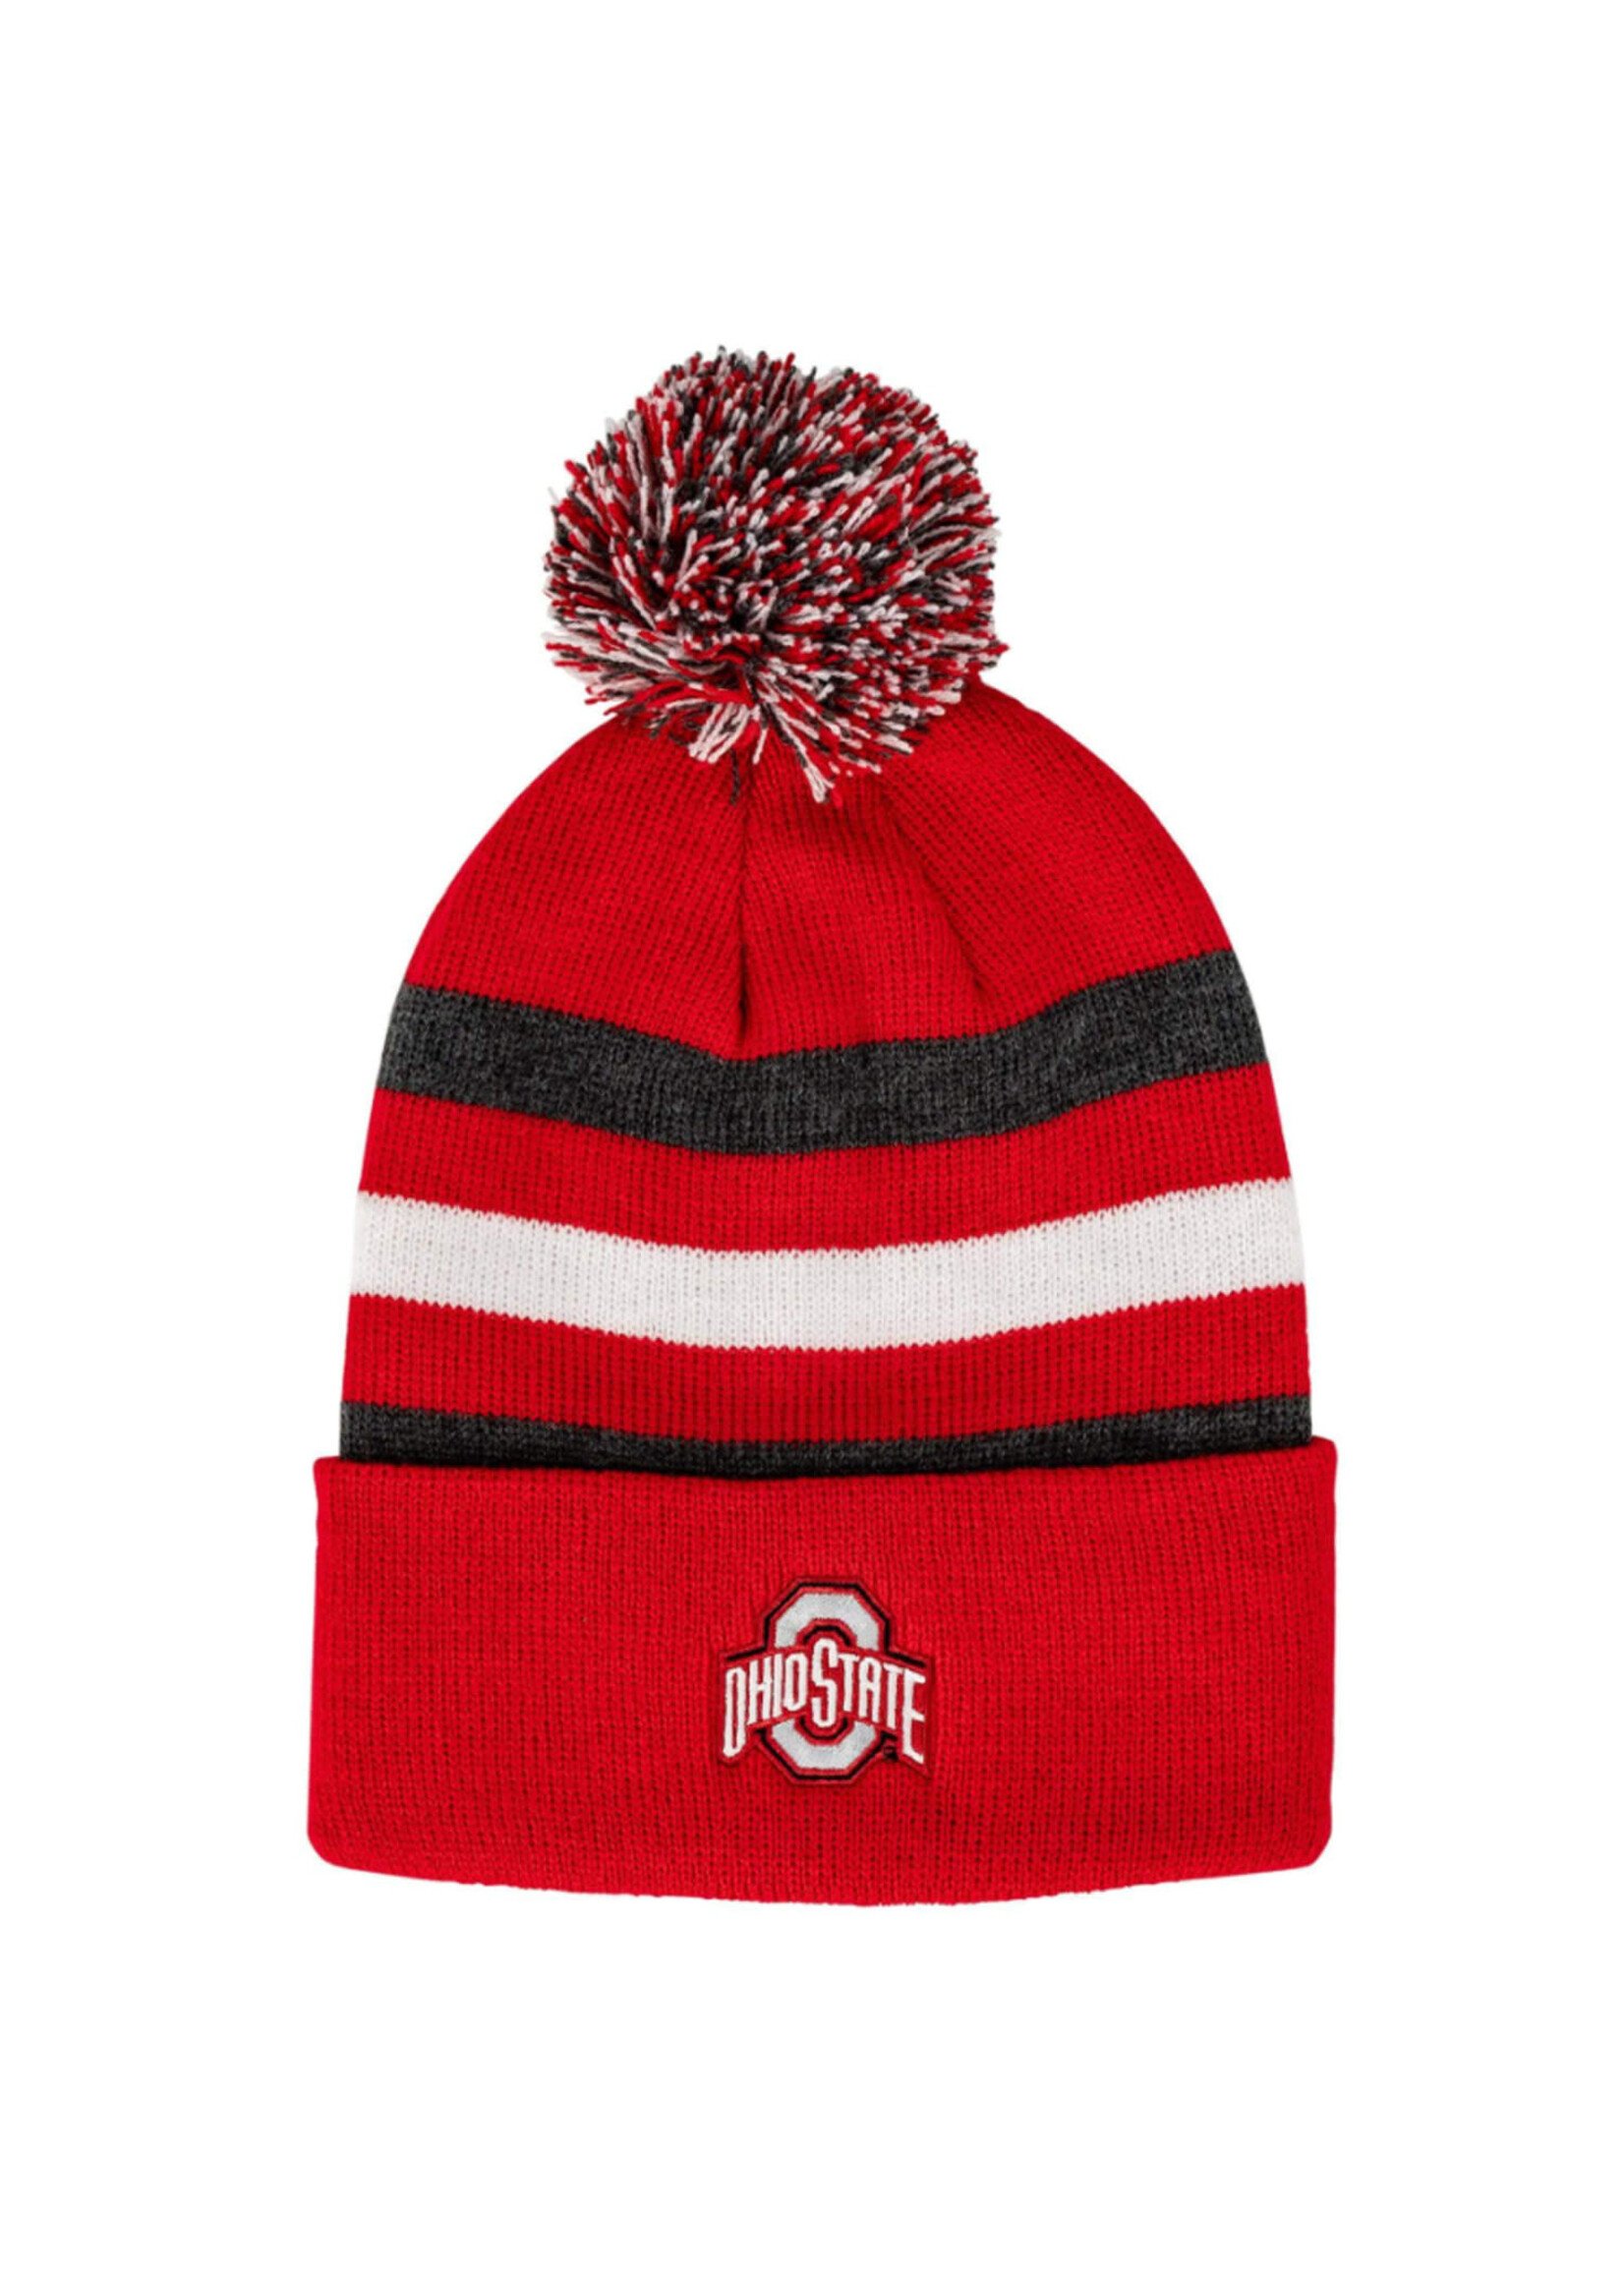 Ohio State Buckeyes Athletic O Kid's Knit Pom Hat